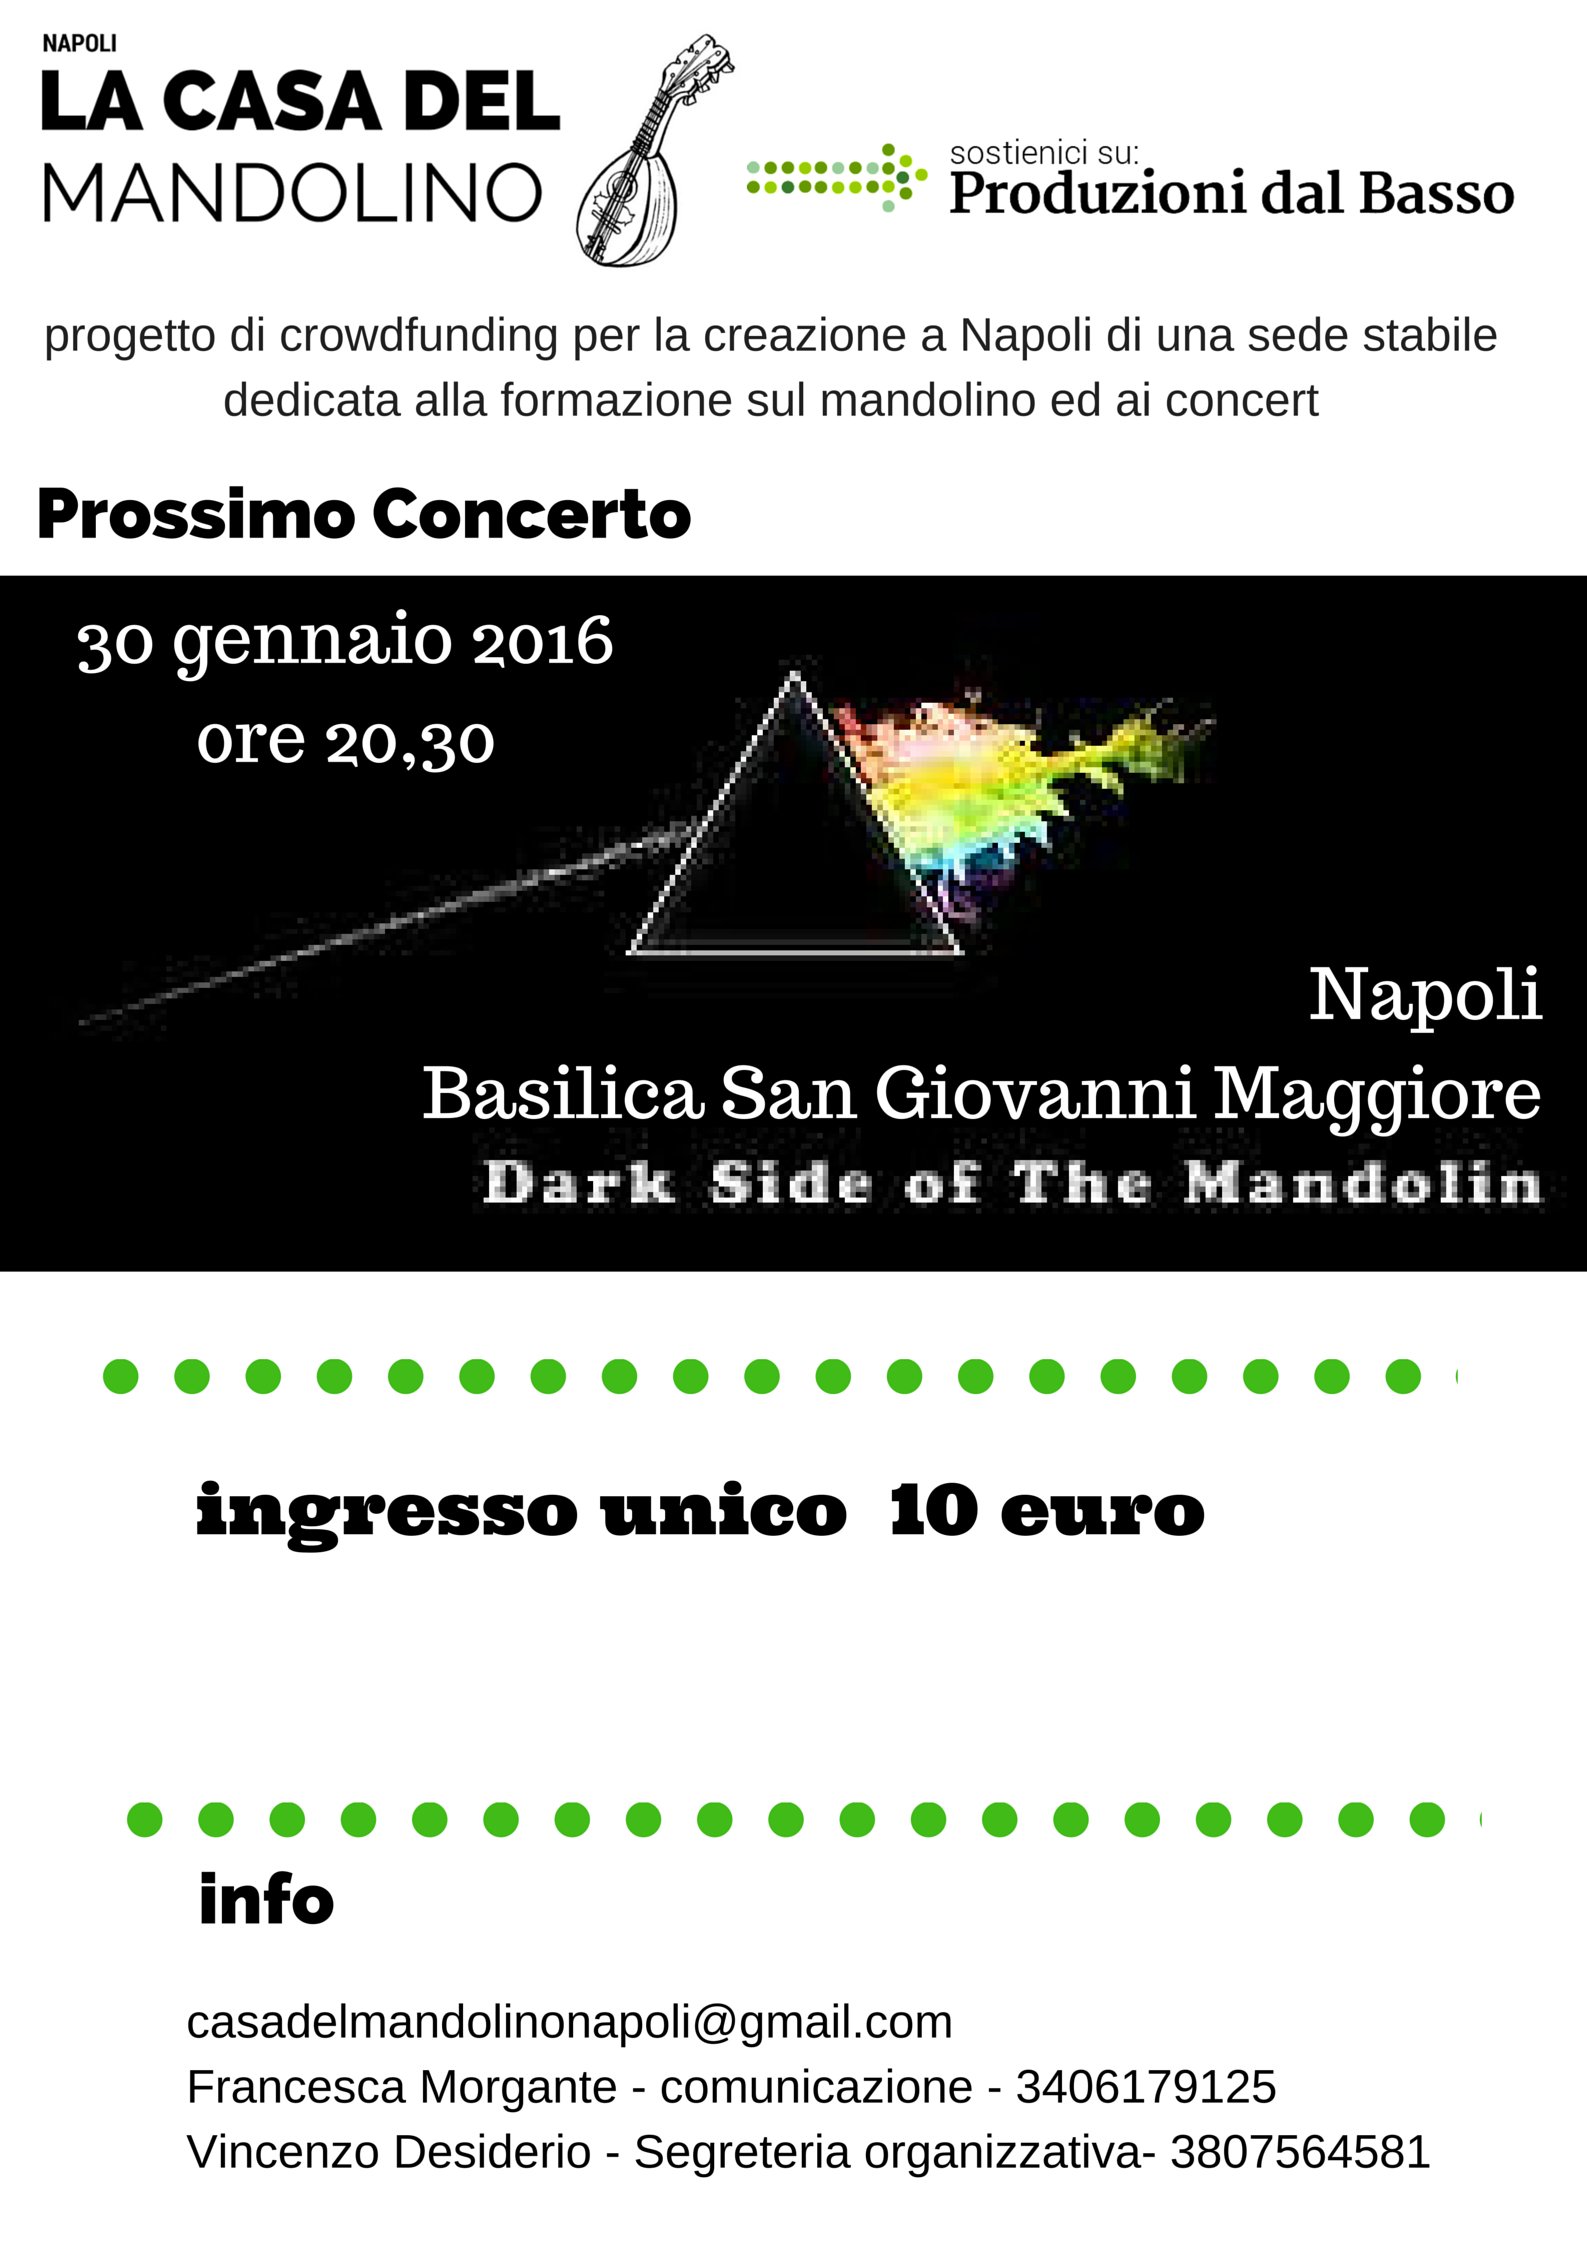 dark side of mandolin  concerto 30 gennaio 2015 Napoli 